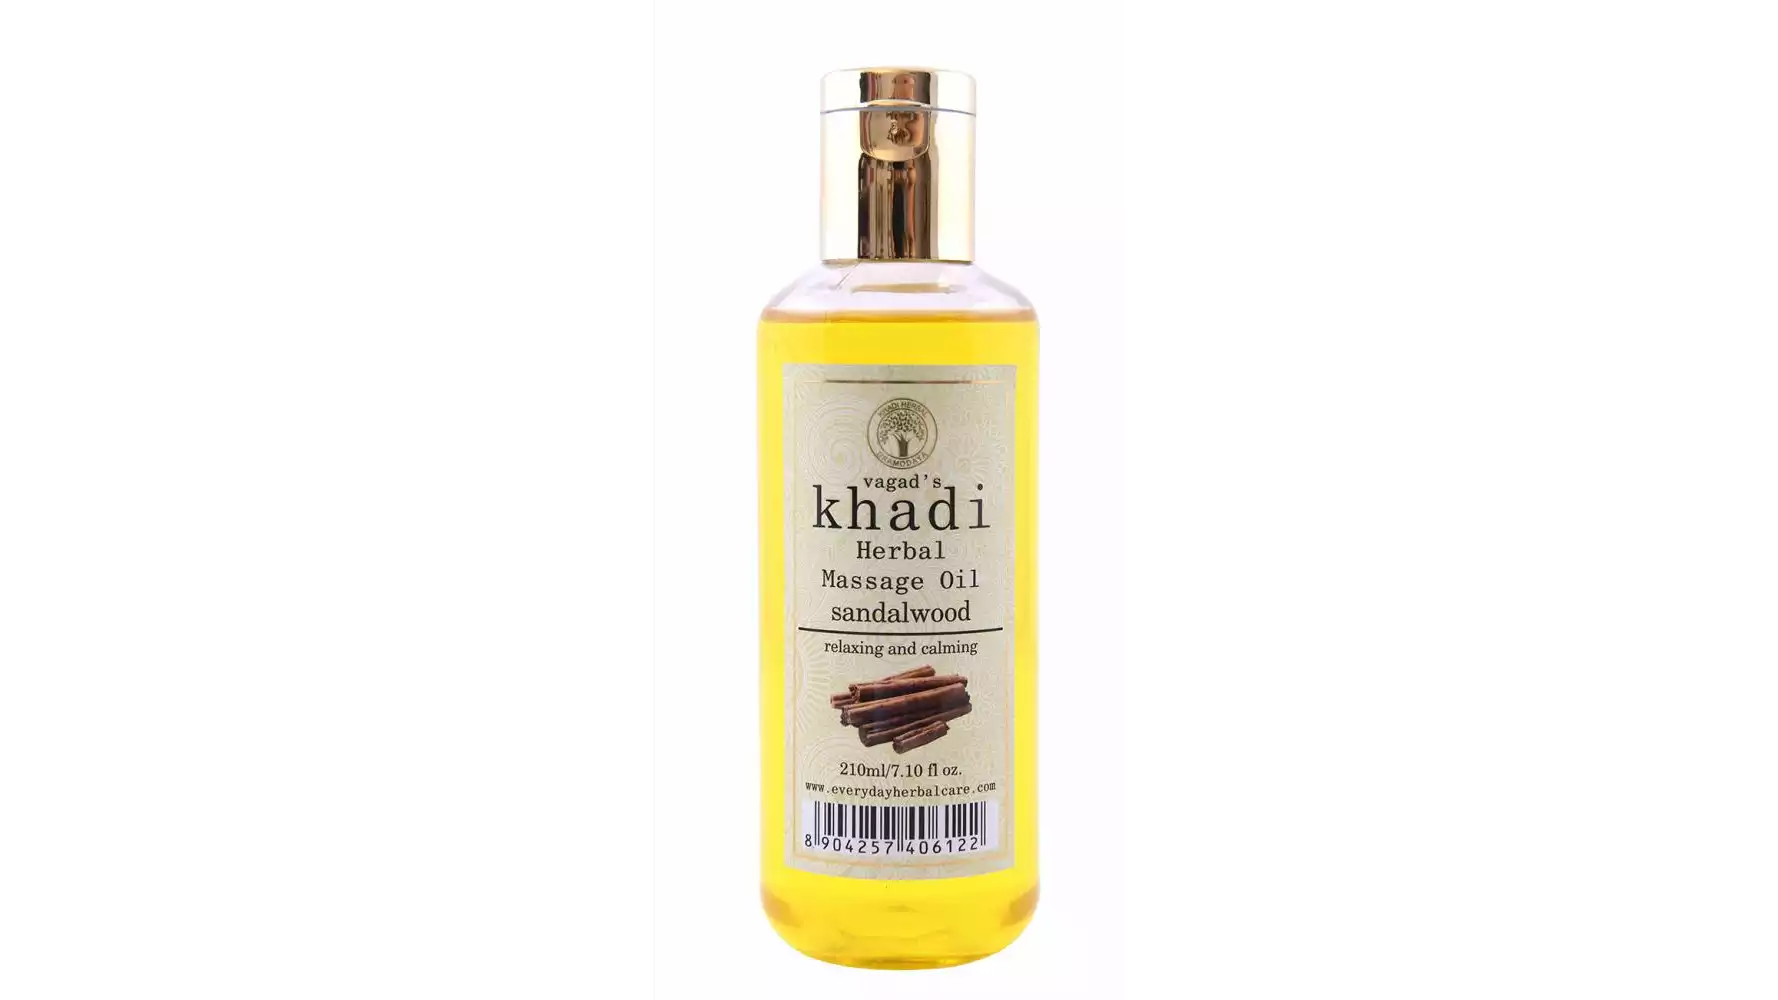 Vagads Khadi Sandalwood Massage Oil (210ml)